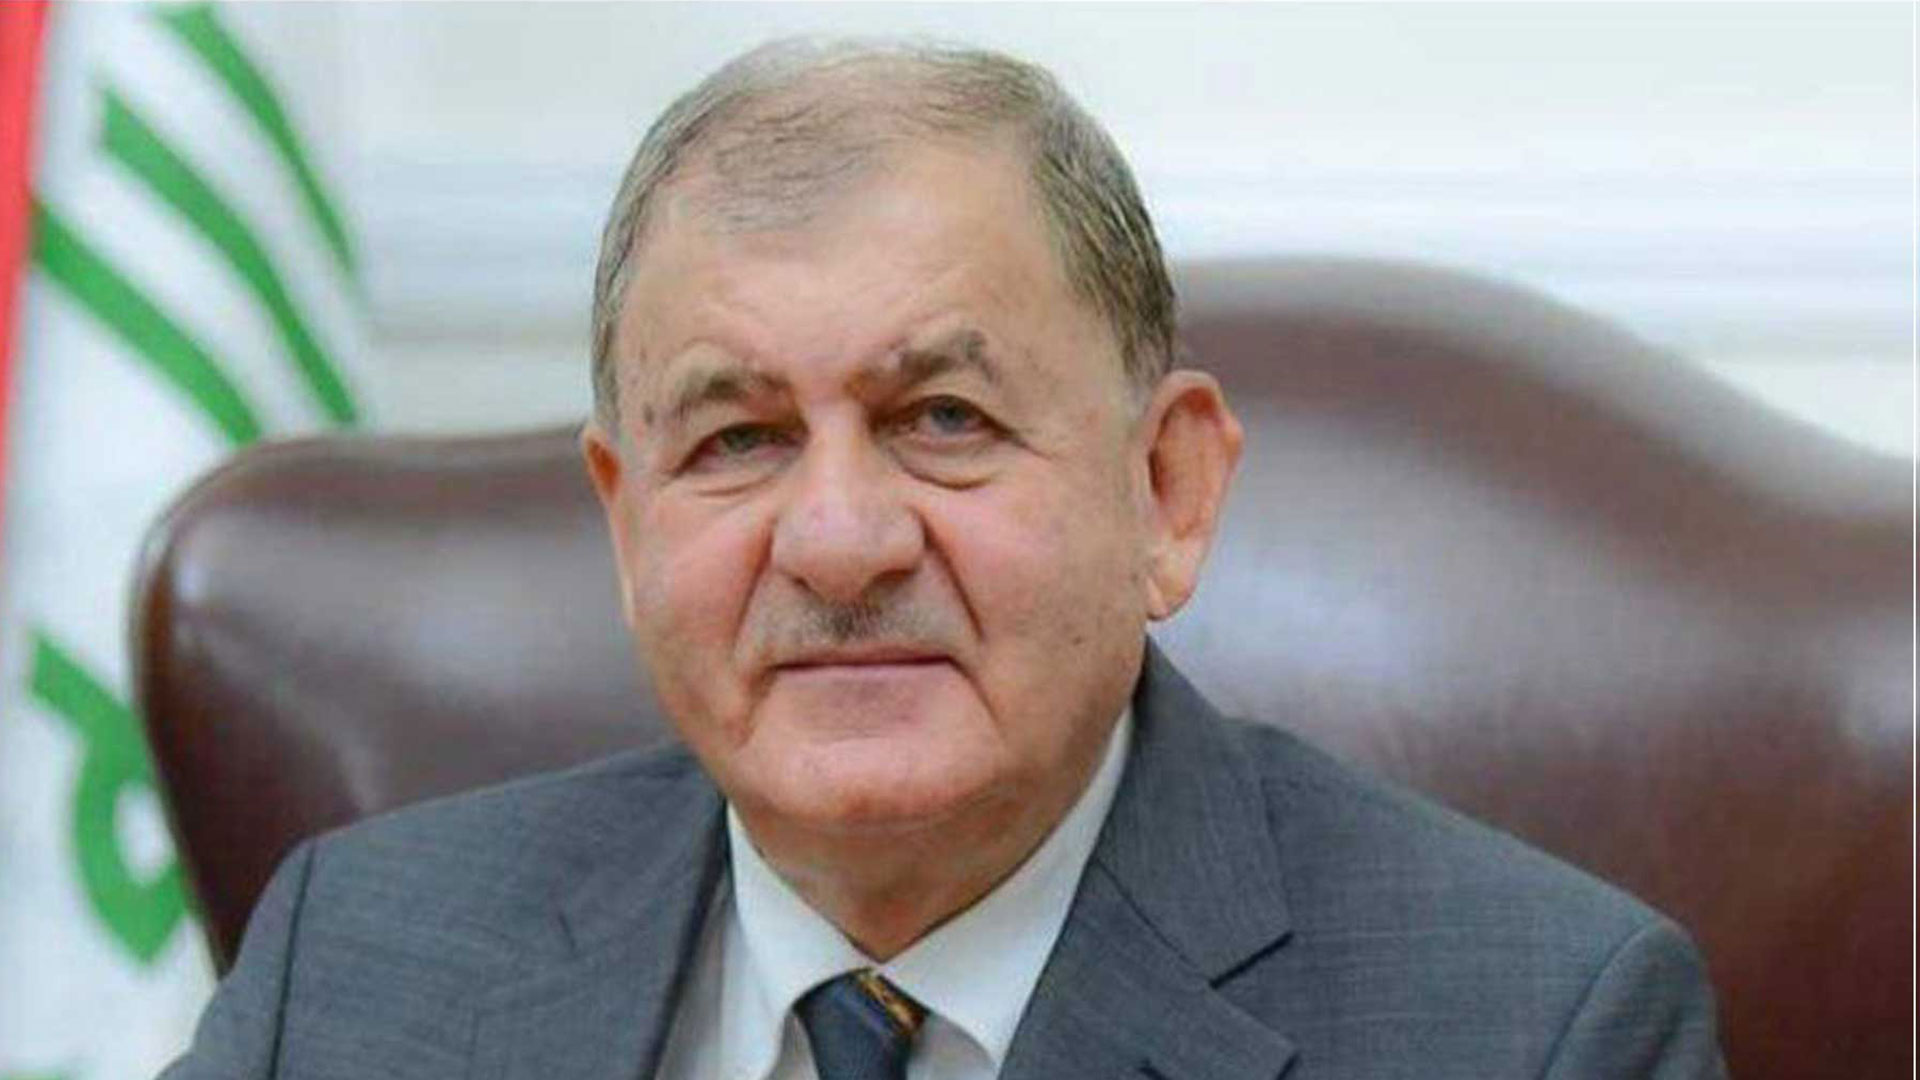  Iraqi President Abdullatif Jamal Rashid